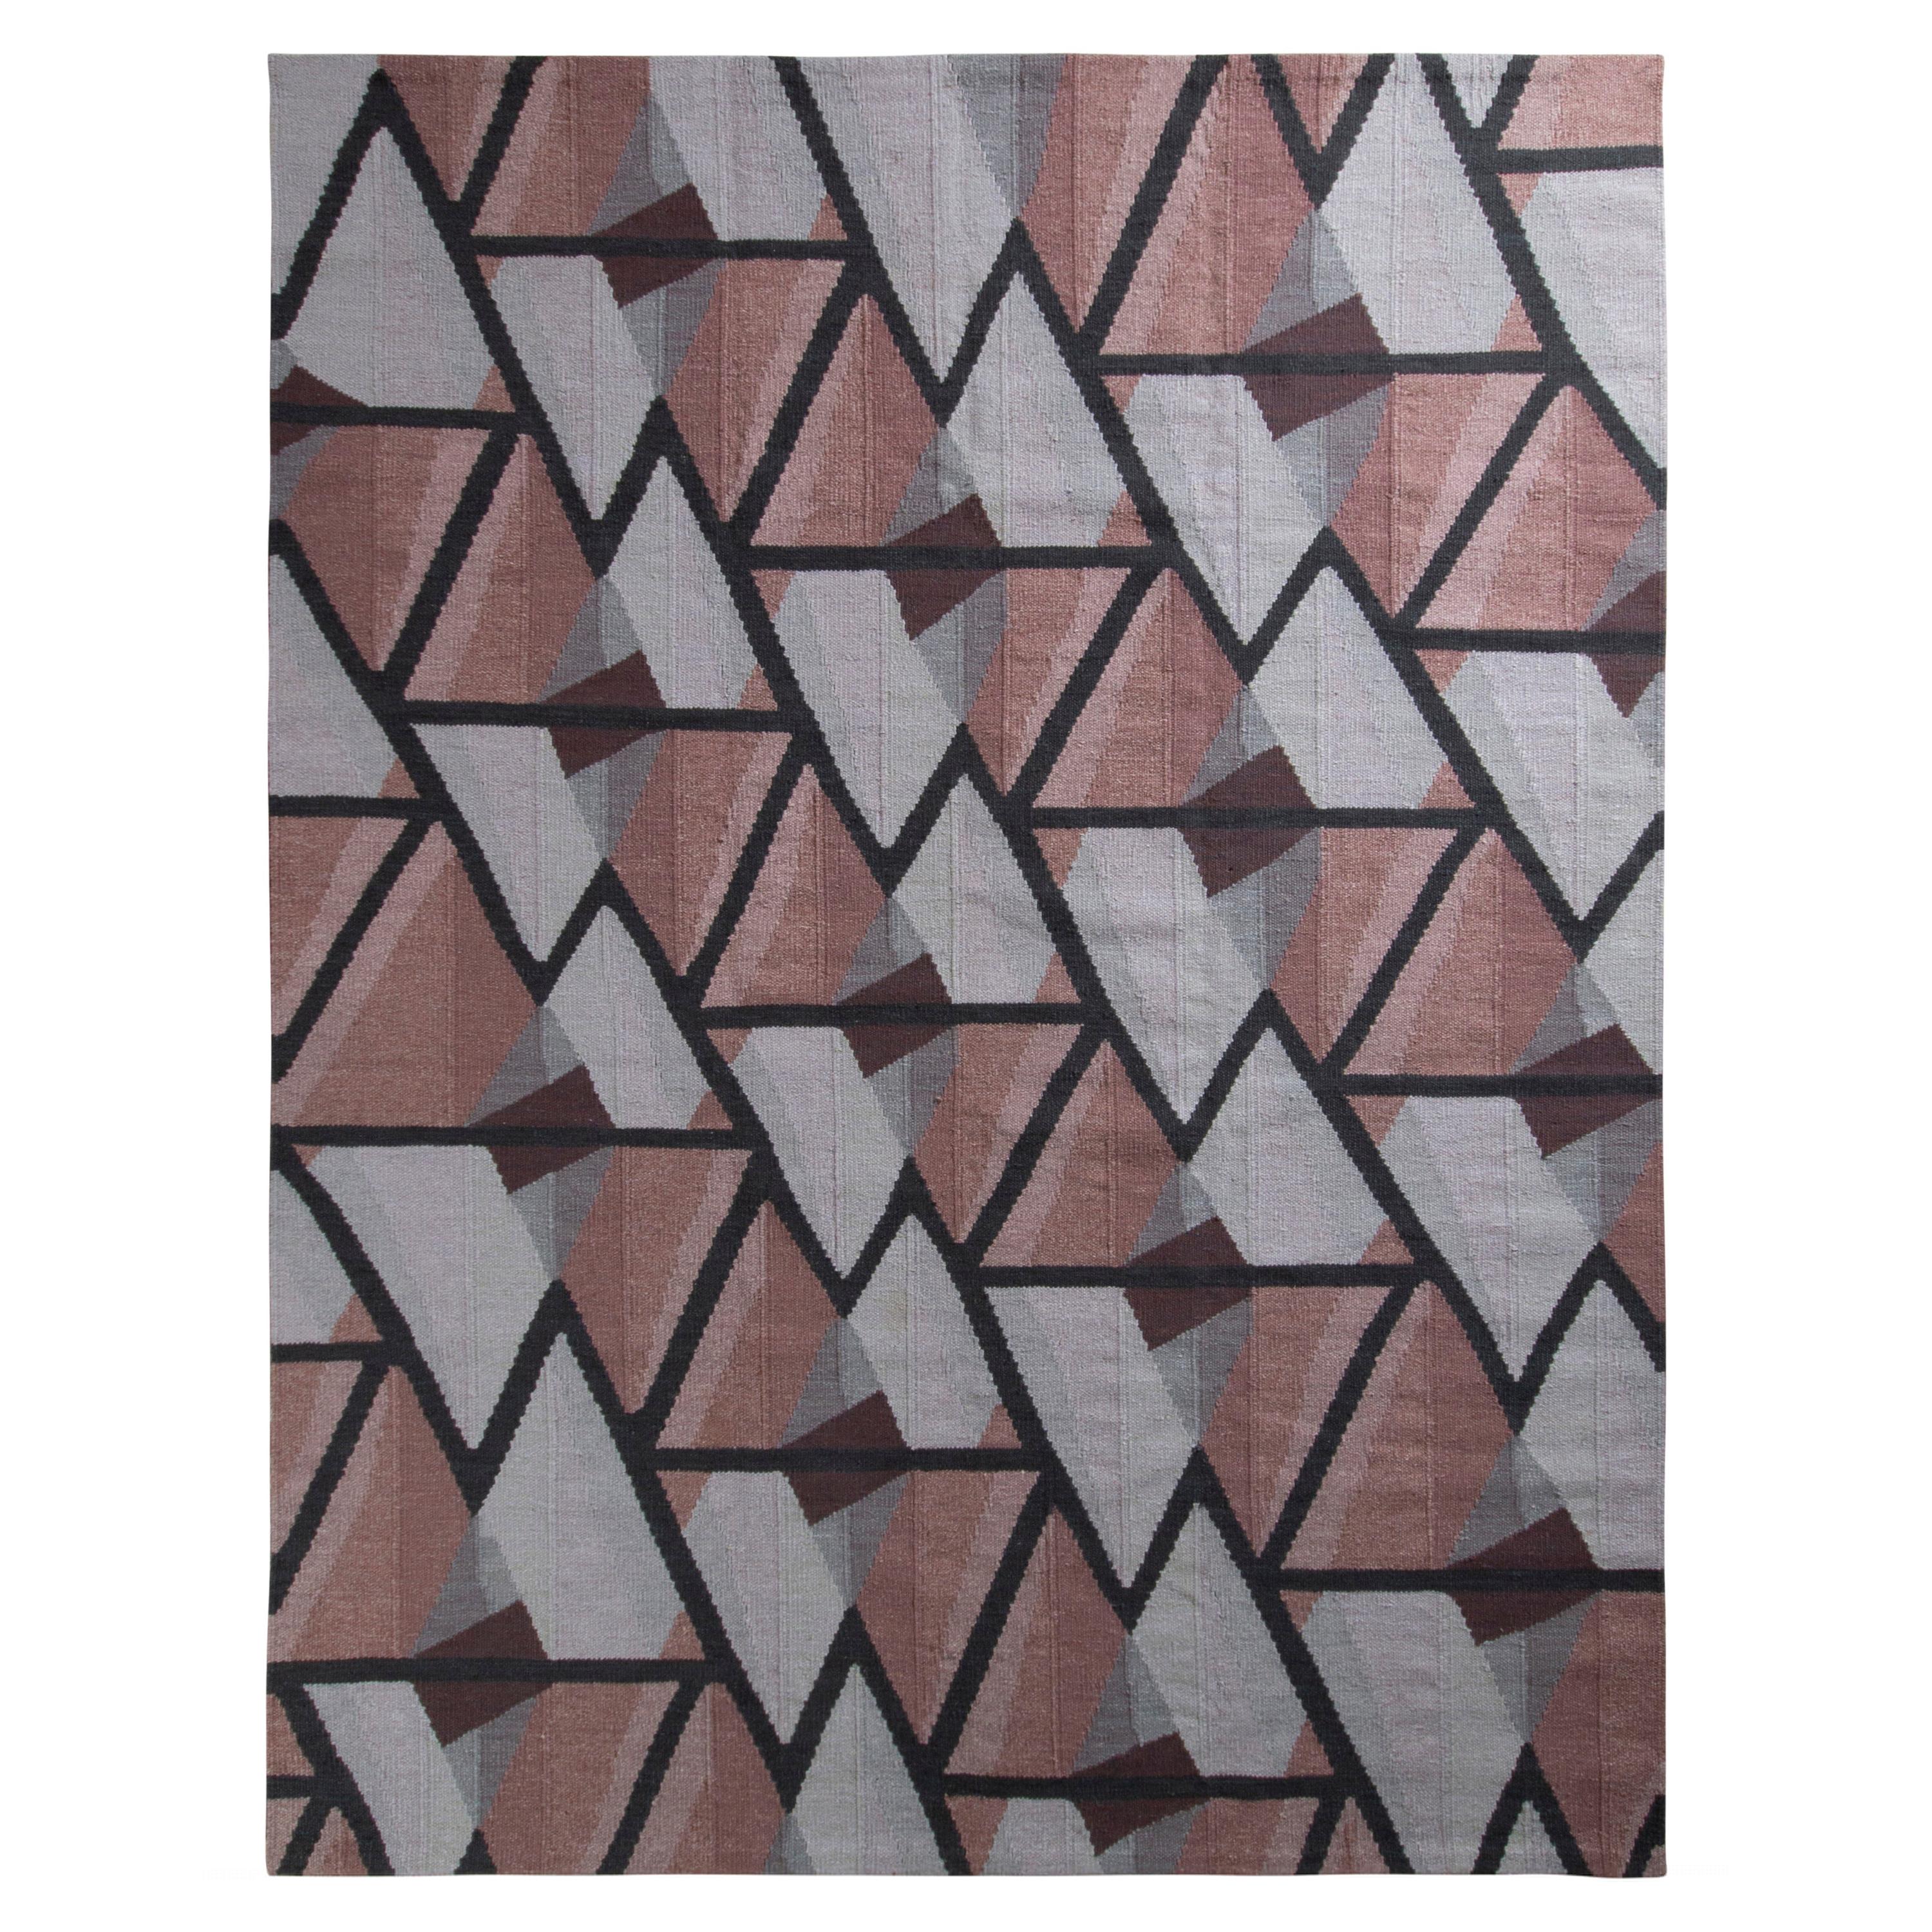 Tapis Kilim de style scandinave Kilims en gris et rose à motifs géométriques